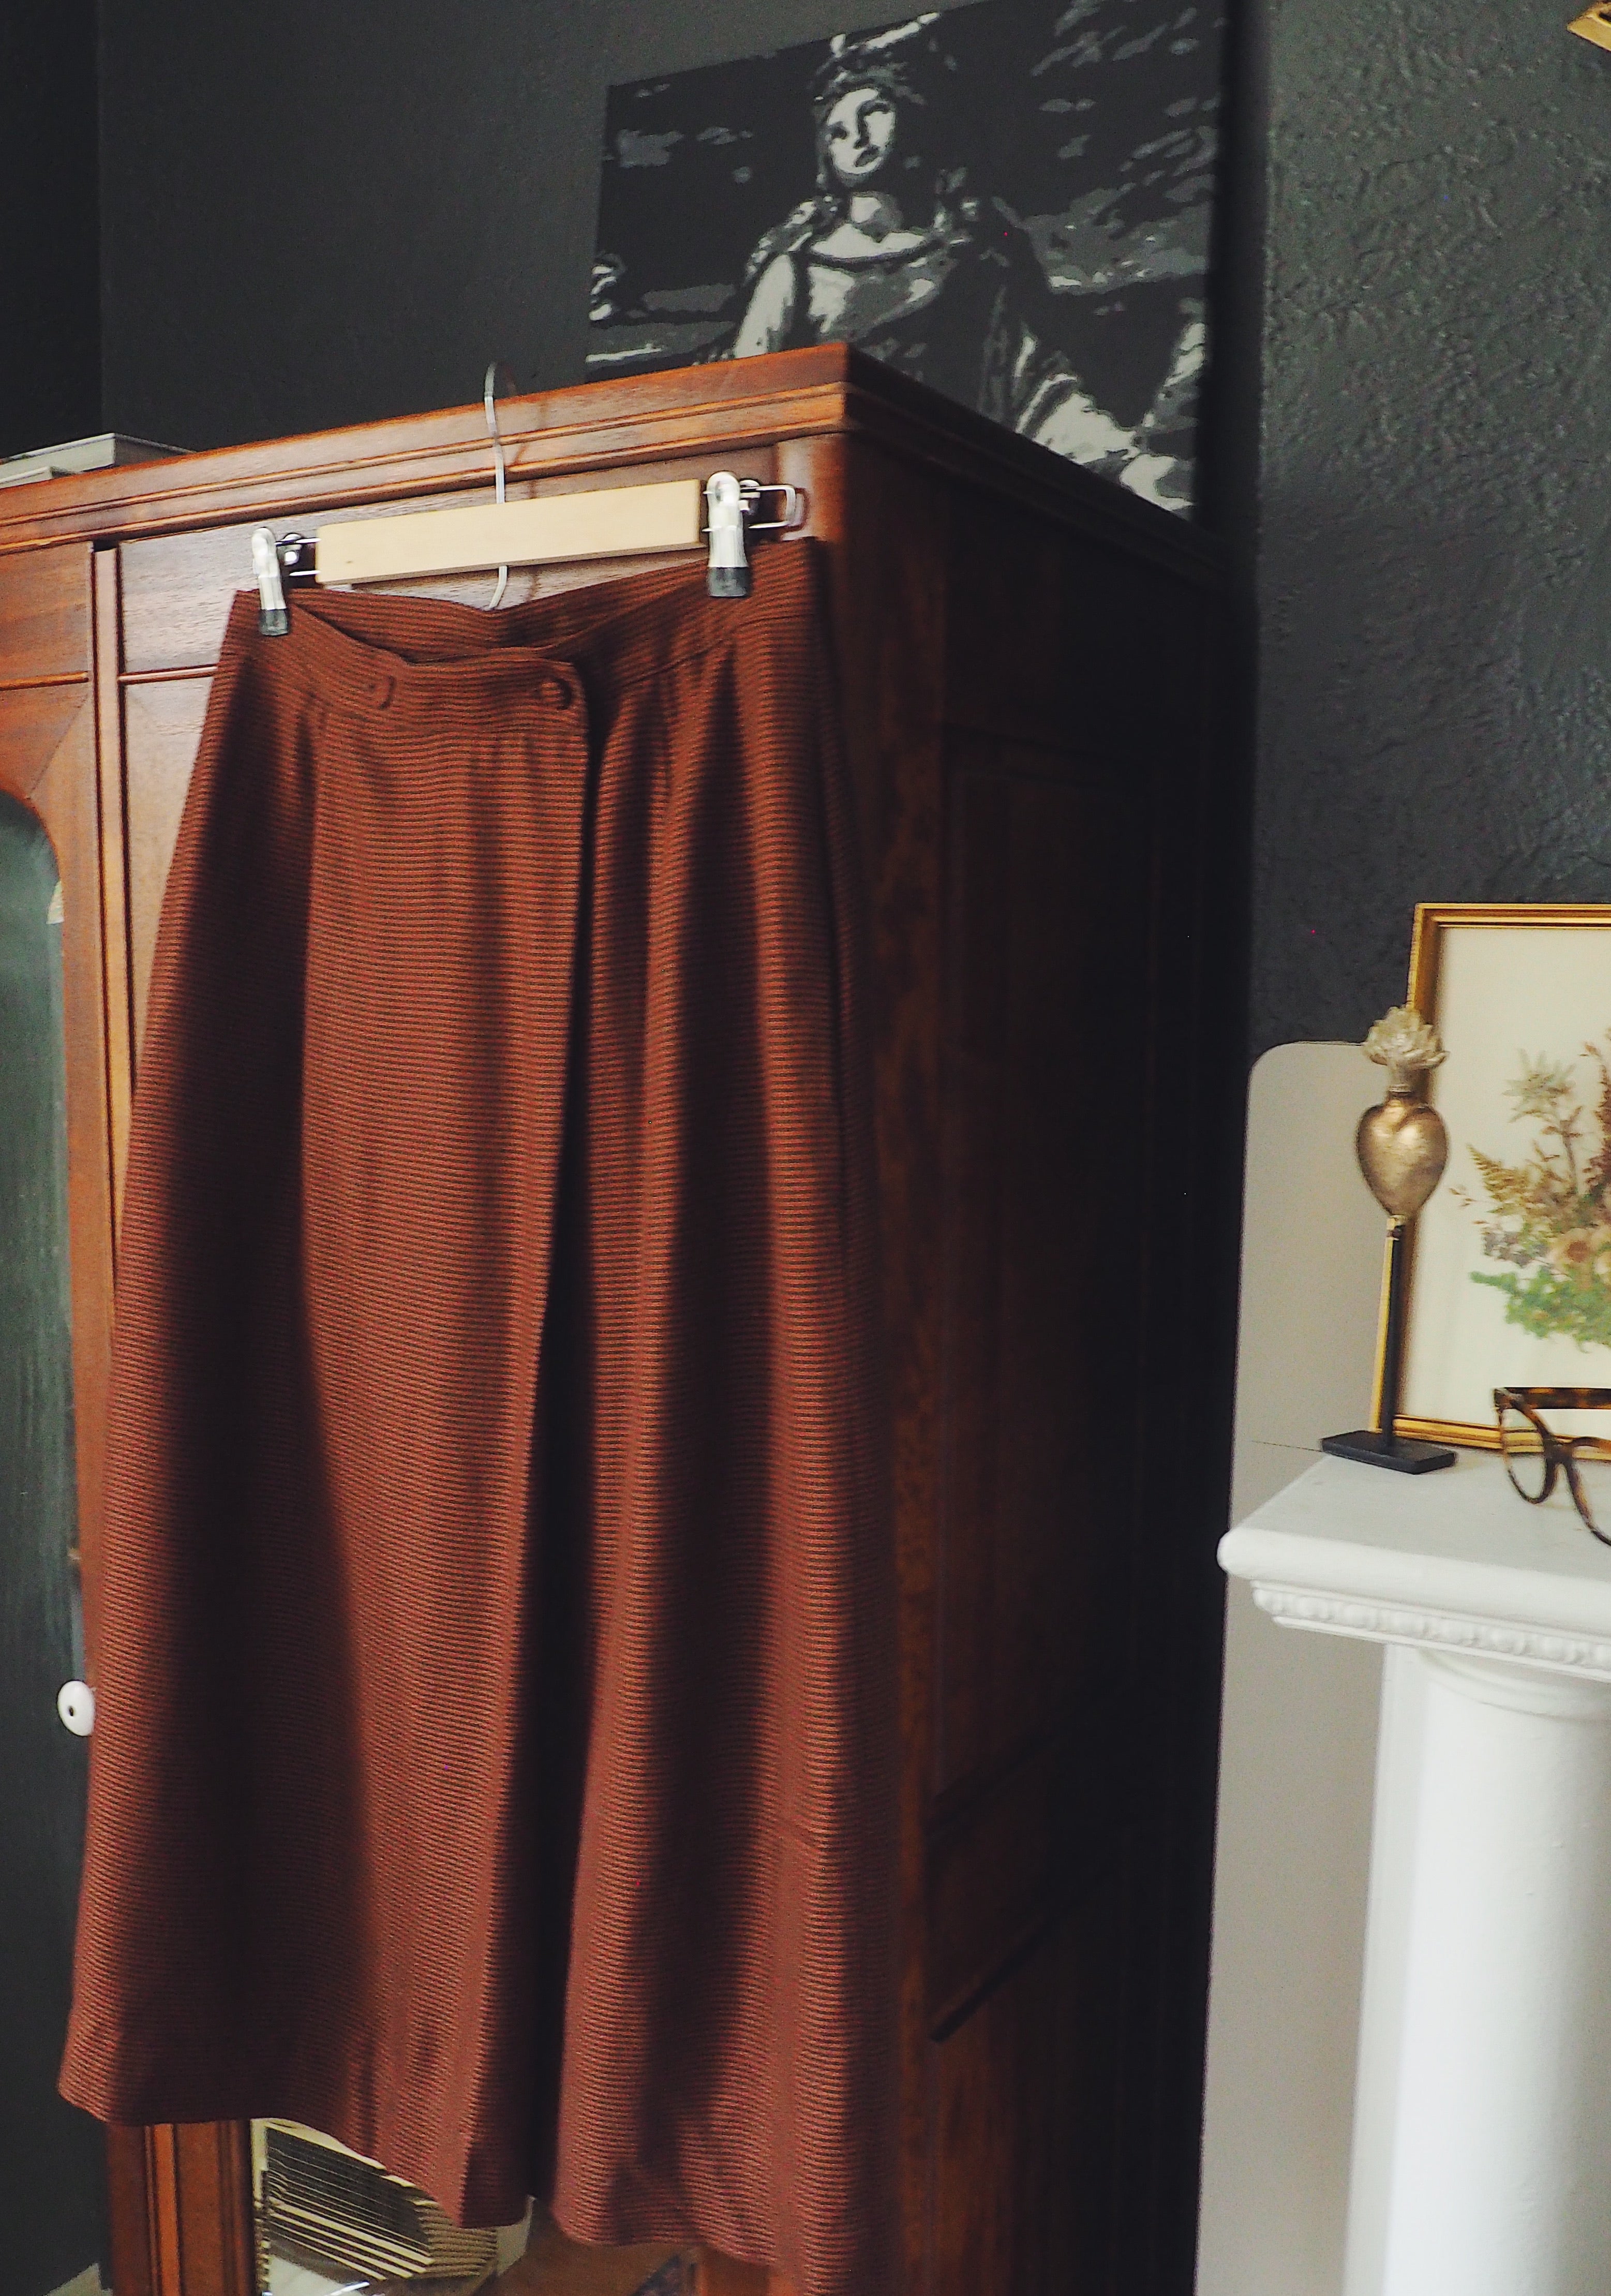 Vintage Brown Pin Check Midi Skirt